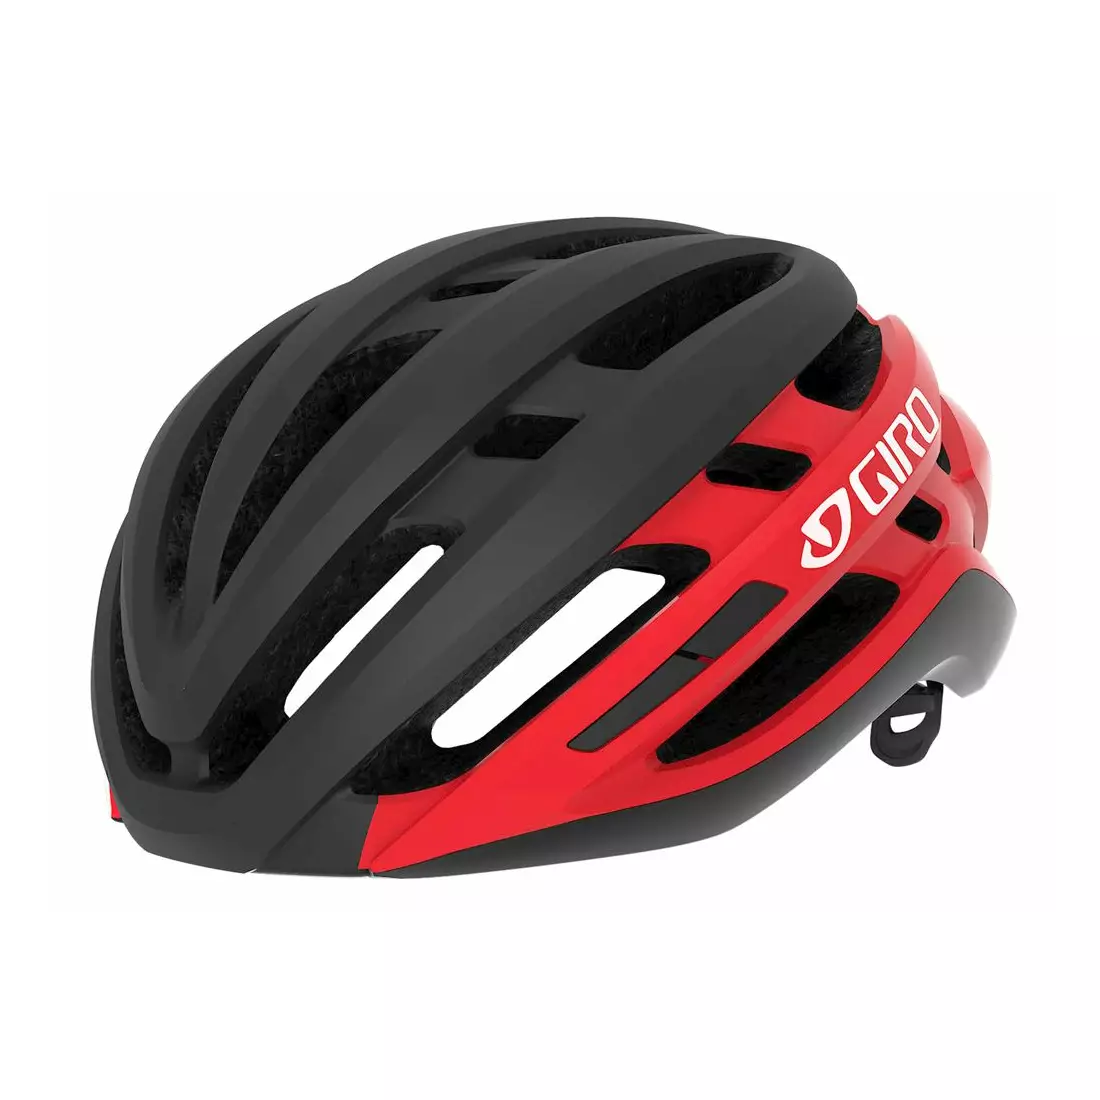 Cască de bicicletă GIRO AGILIS matte black bright red 